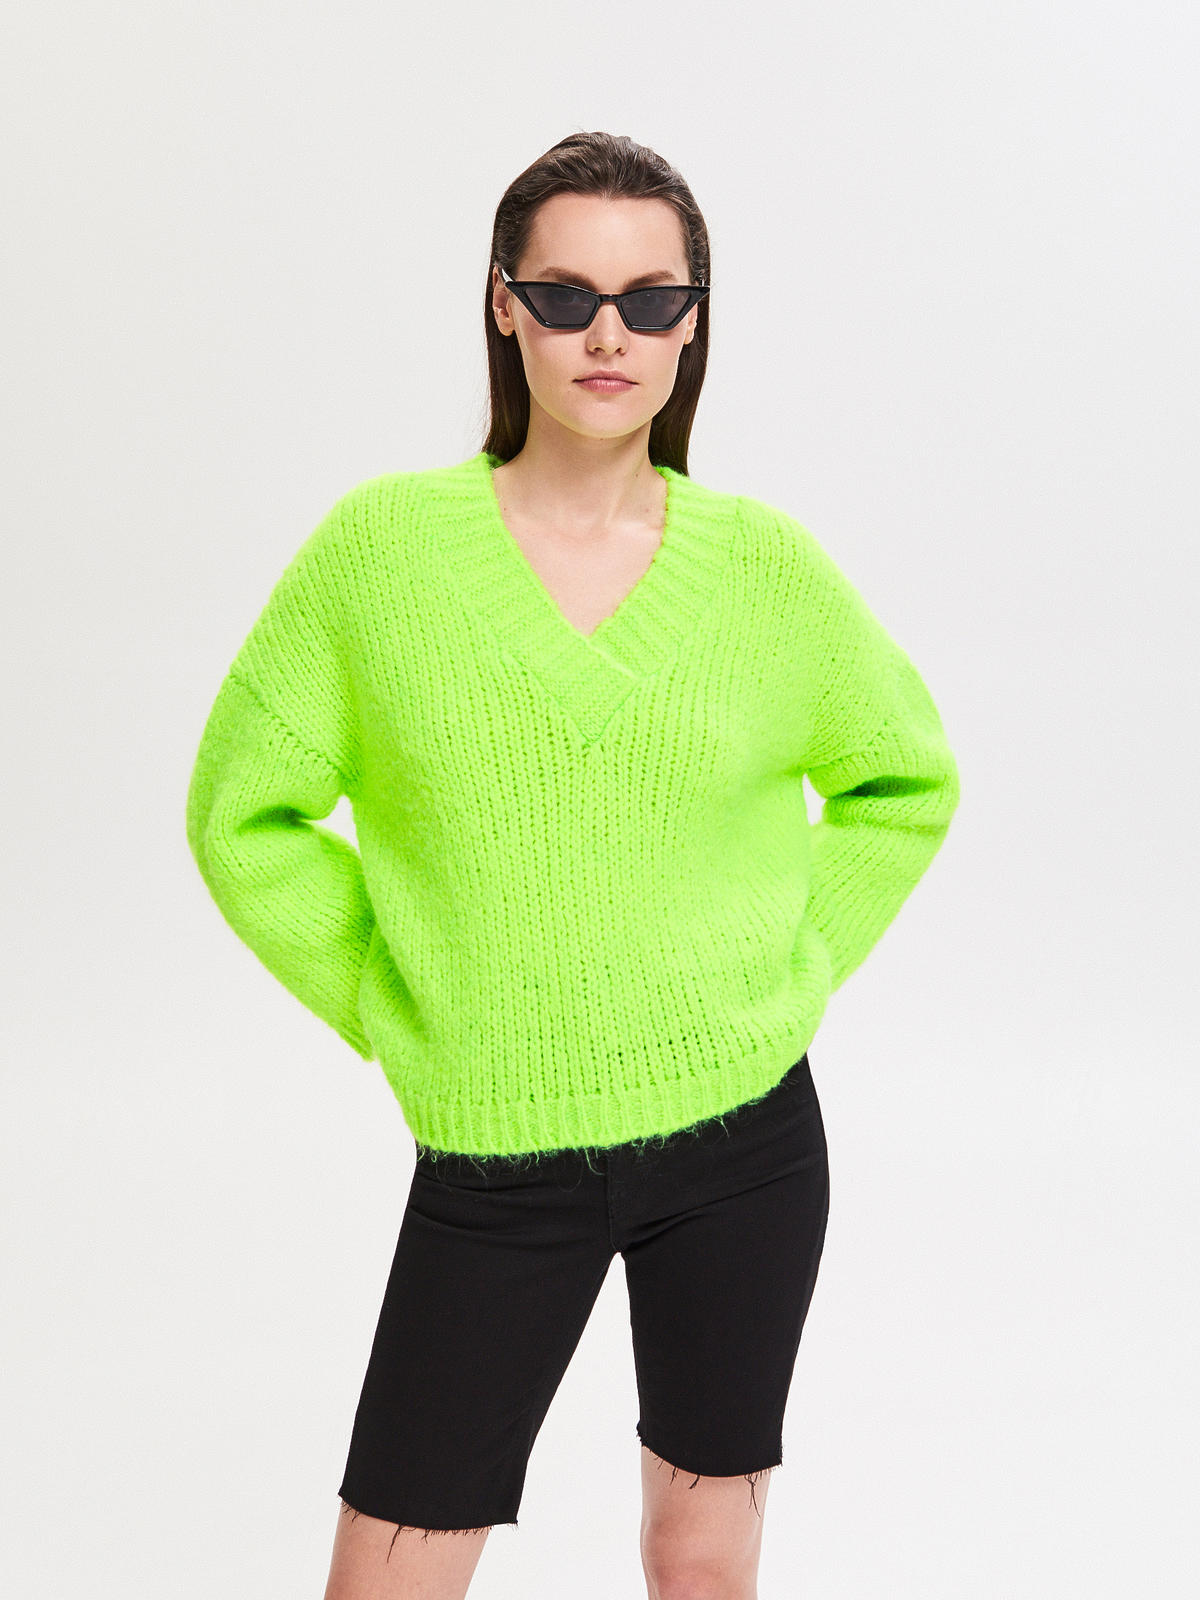 Wyprzedaż w Reserved: neonowy sweter, 69,99 zł (z 139,99 zł)